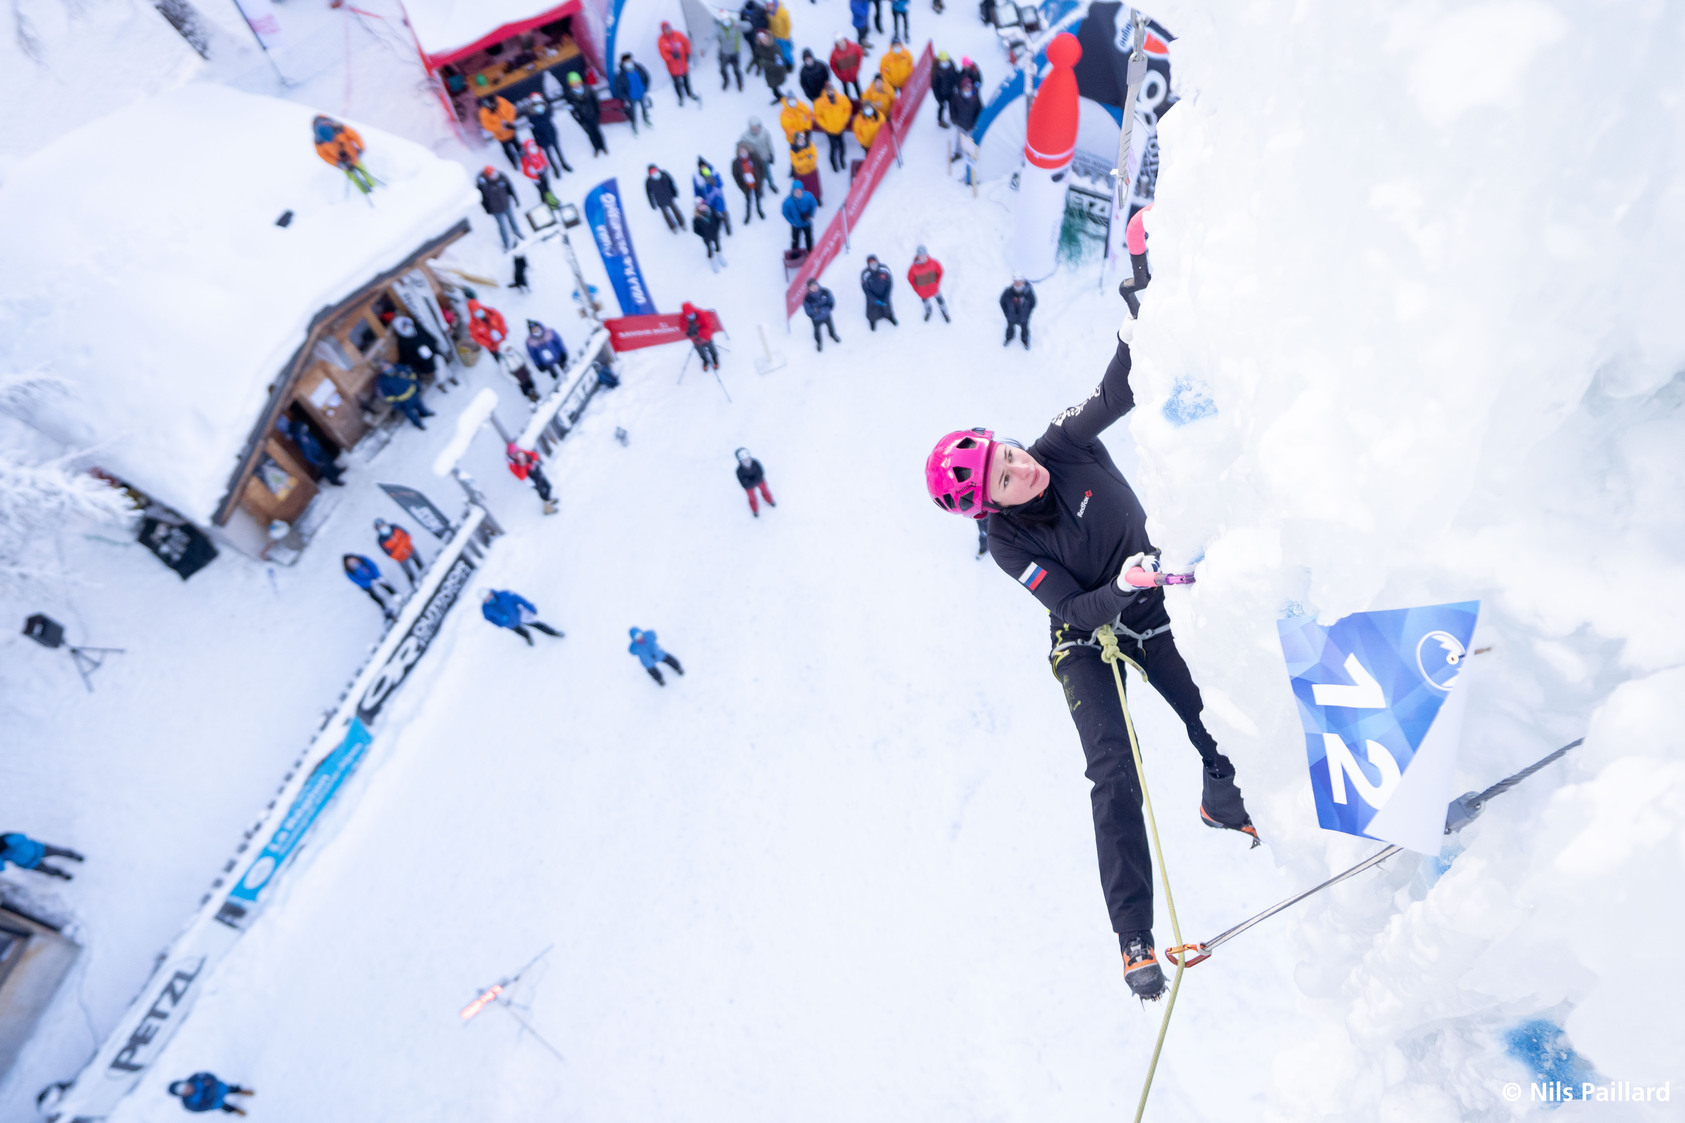 Championnats d'Europe d'escalade sur glace- Nils Paillard